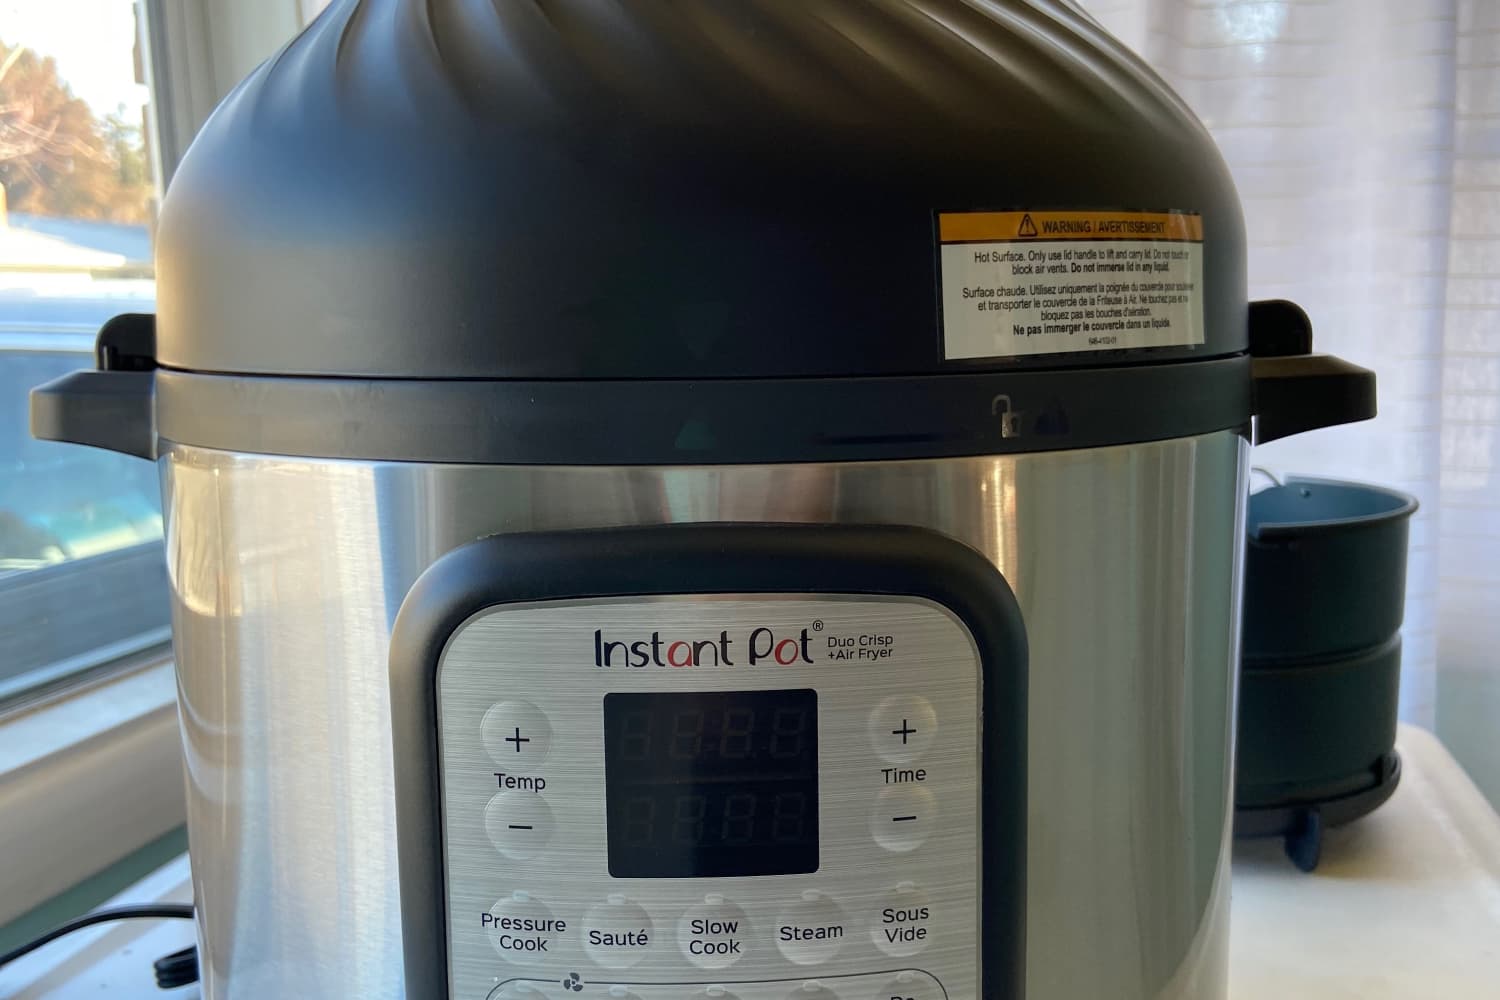 Instant Pot Air Fryer Lid Review 2021